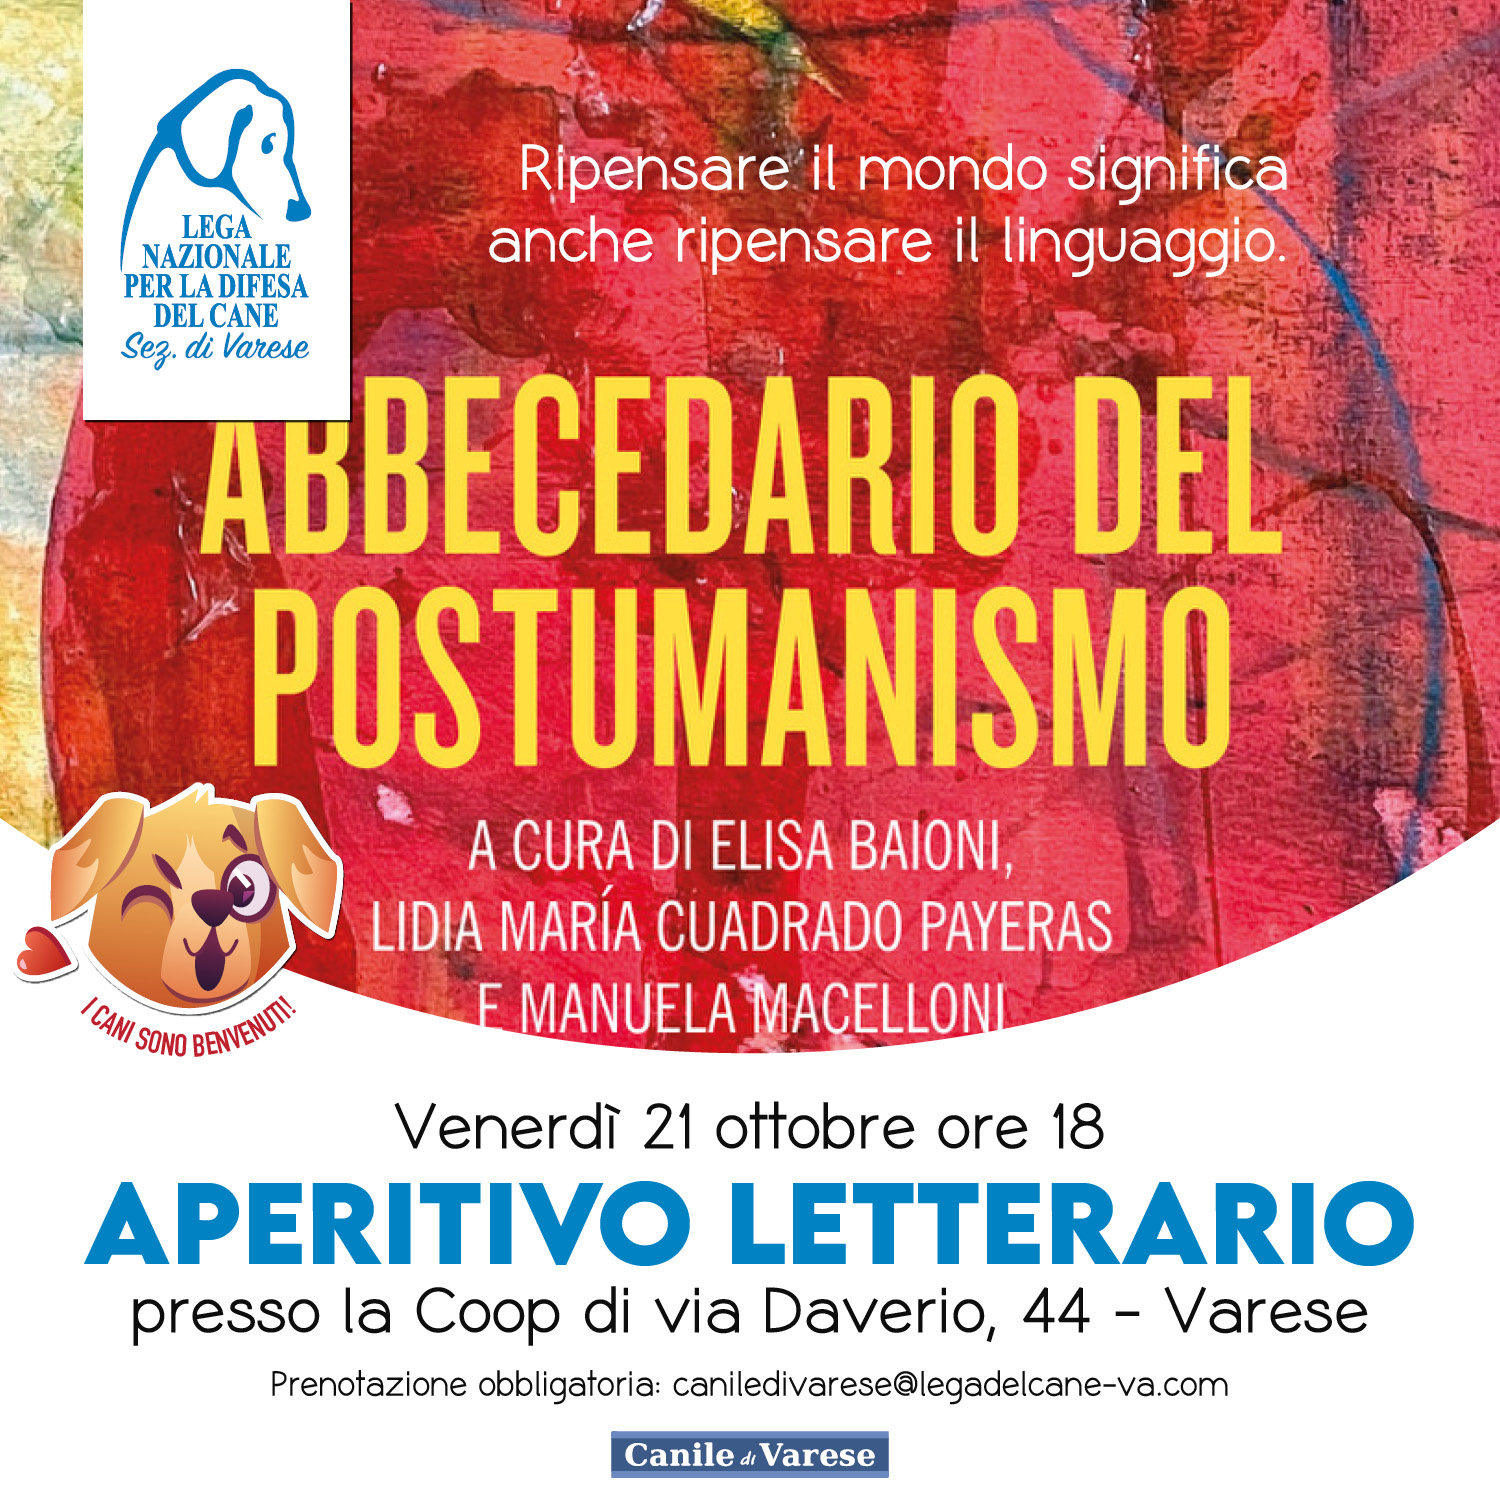 Aperitivo Letterario e Presentazione "ABBECEDARIO DEL POSTUMANISMO" con Manuela Macelloni coop varese ubik libreria beneficenza canile